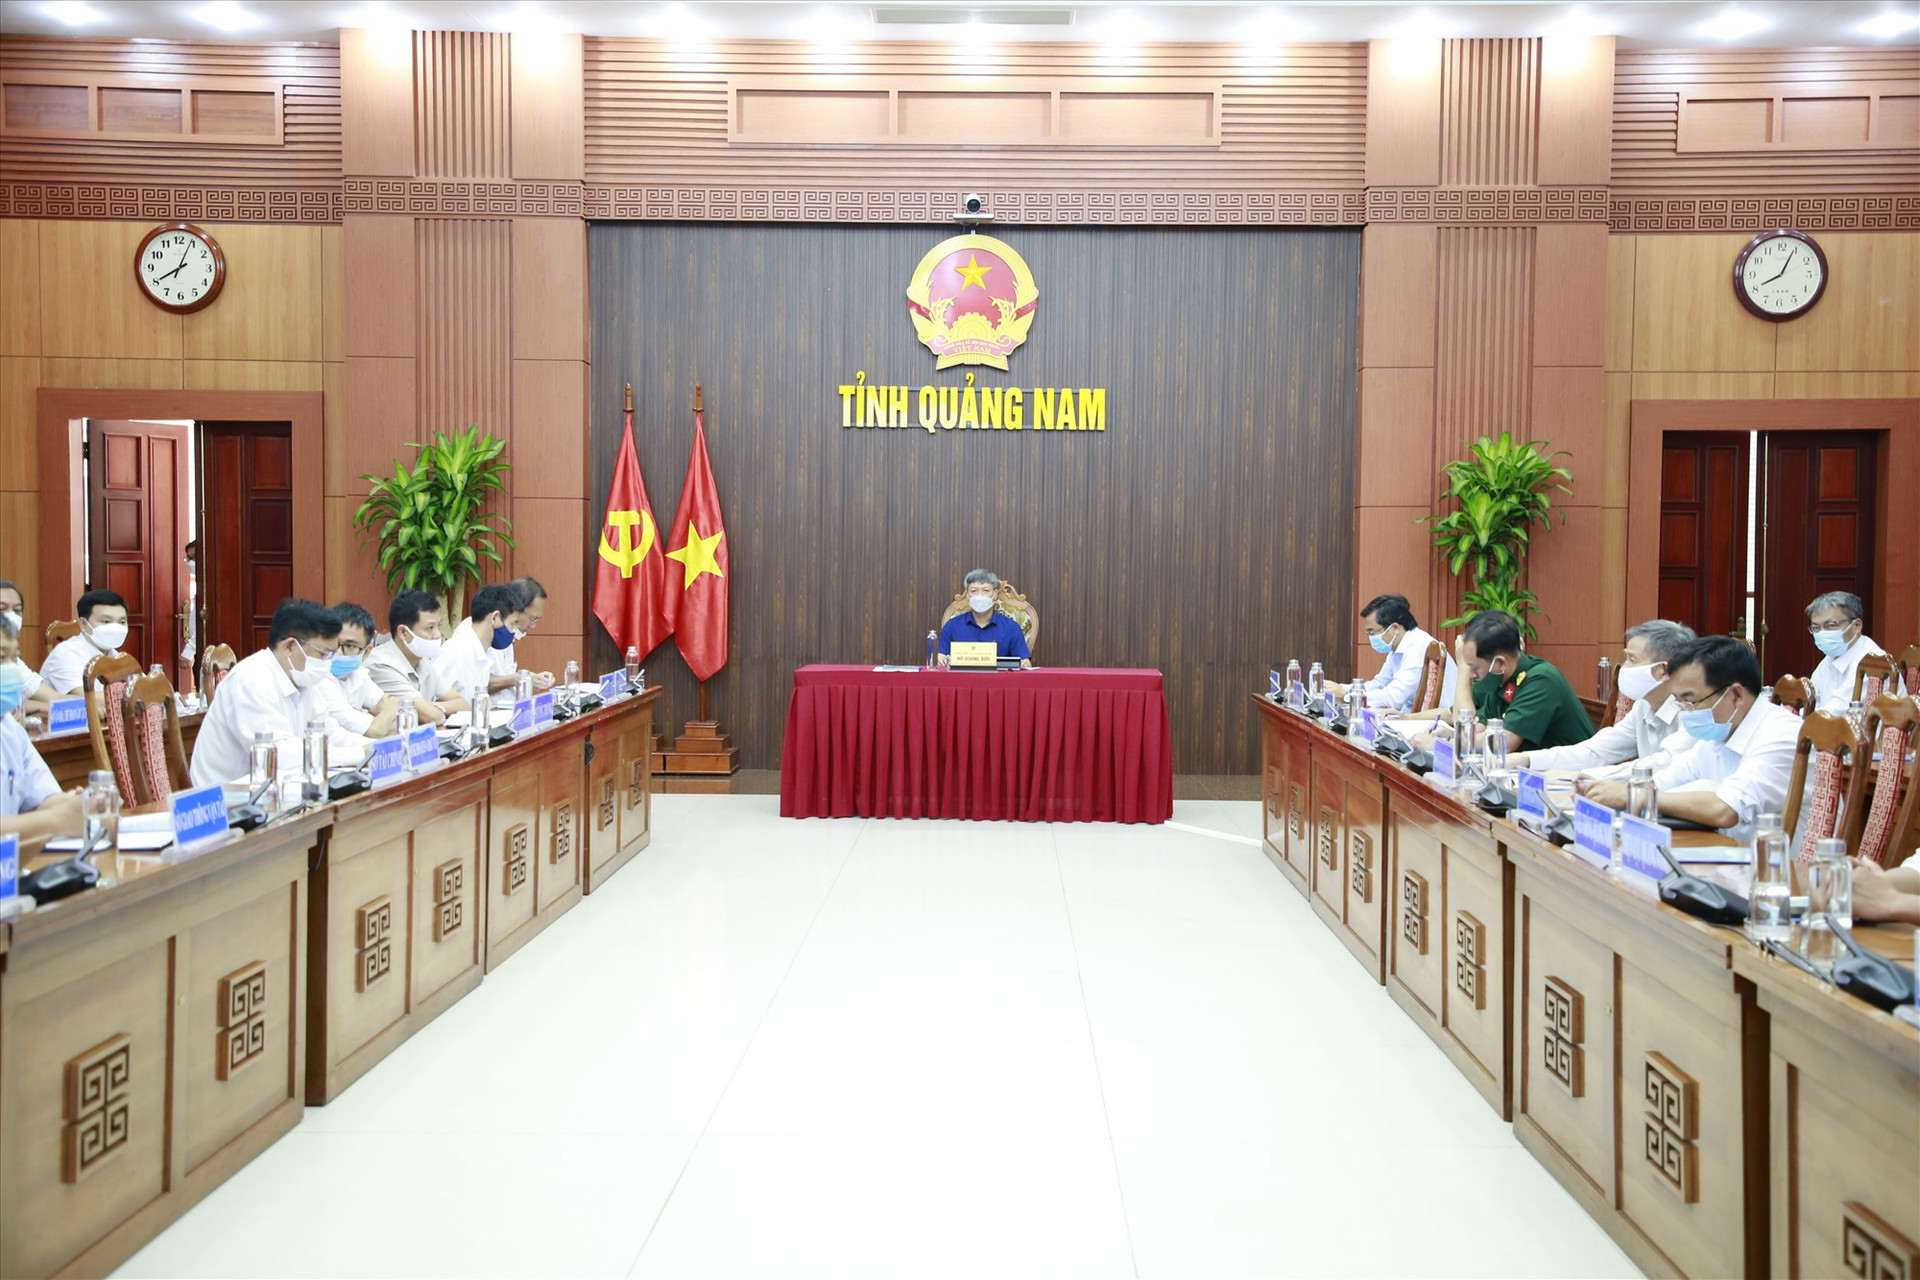 Phó Chủ tịch UBND tỉnh Hồ Quang Bửu chủ trì điểm cầu hội nghị tại UBND tỉnh.